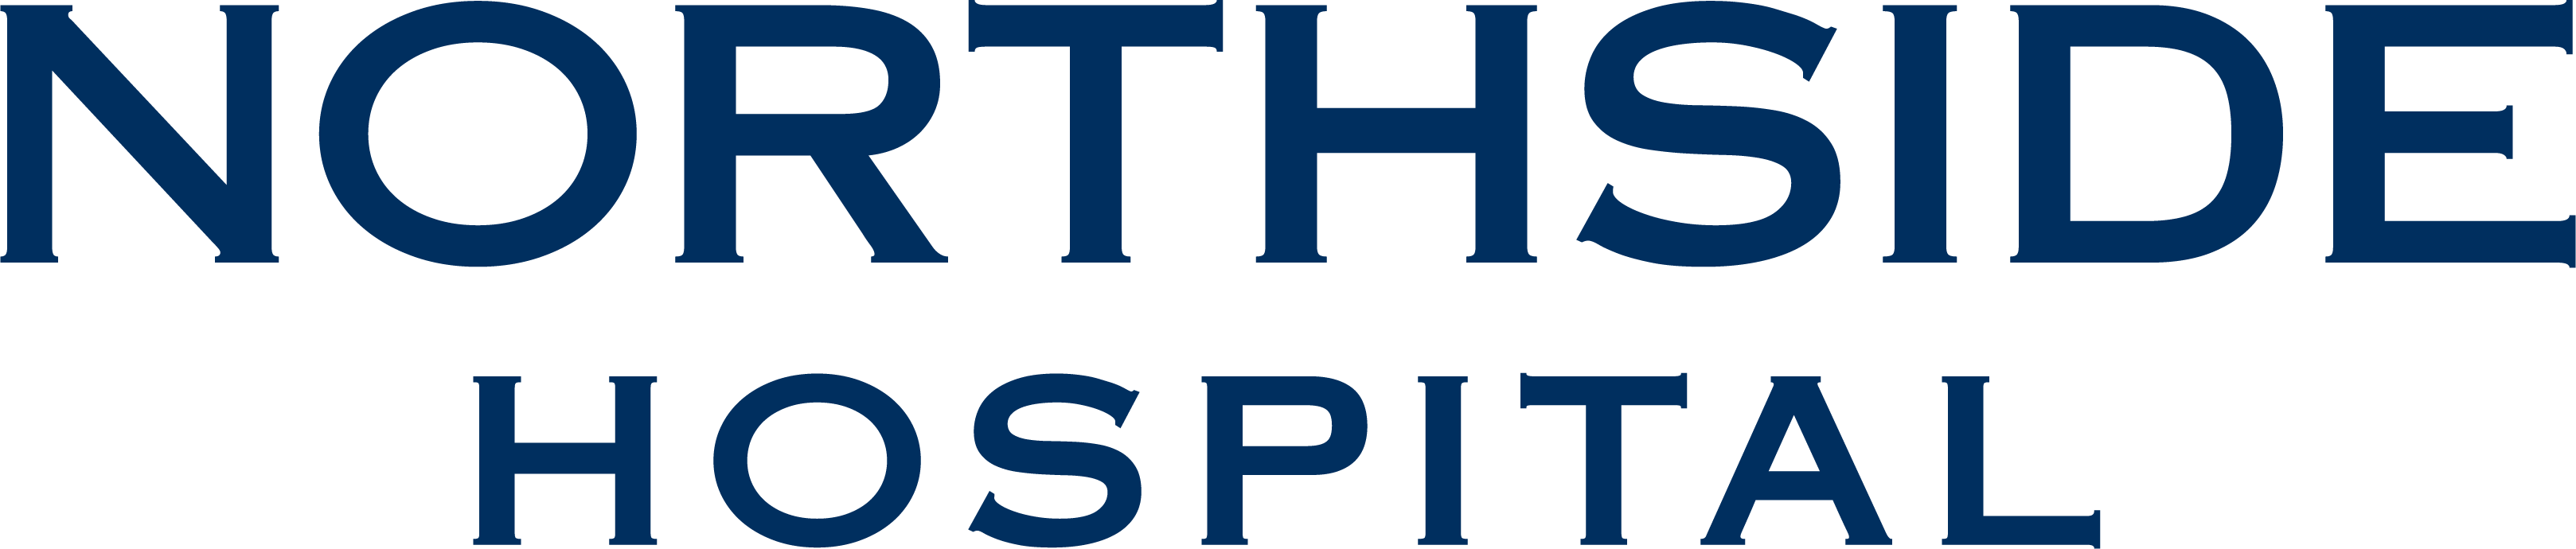 Northside hospital logo - DS ATL.png